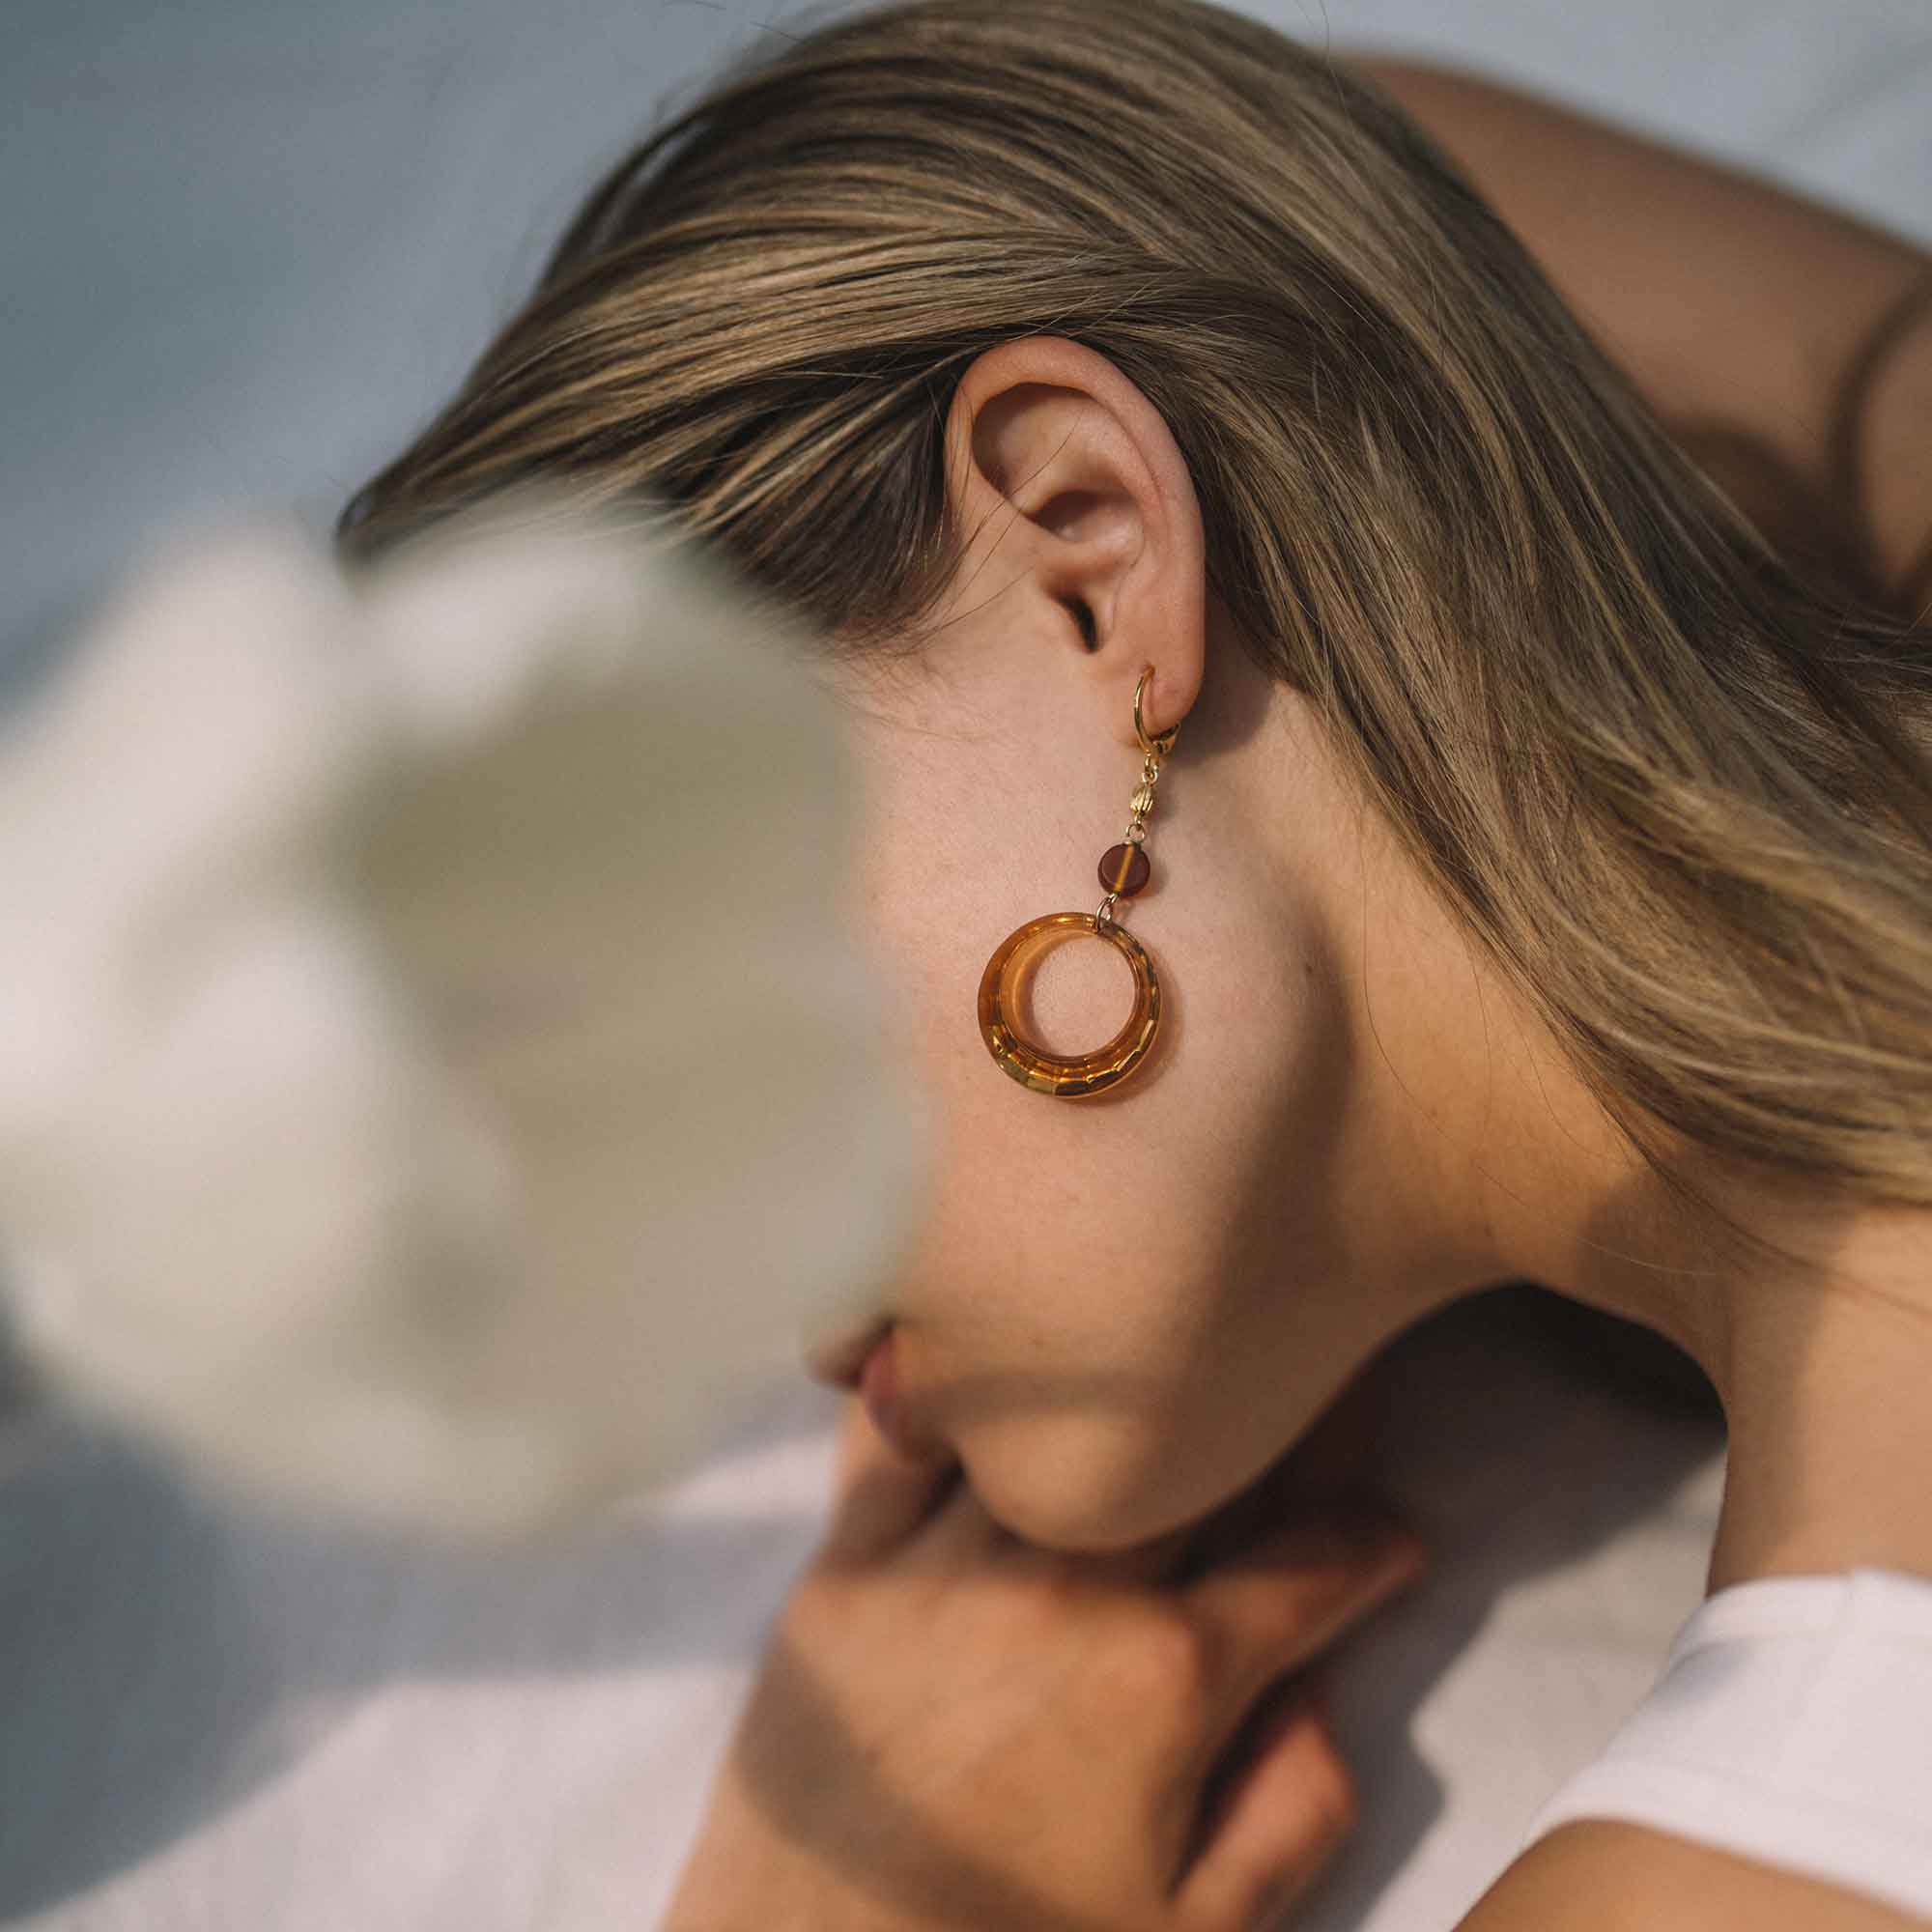 sandrine devost jewelry best earrings designer